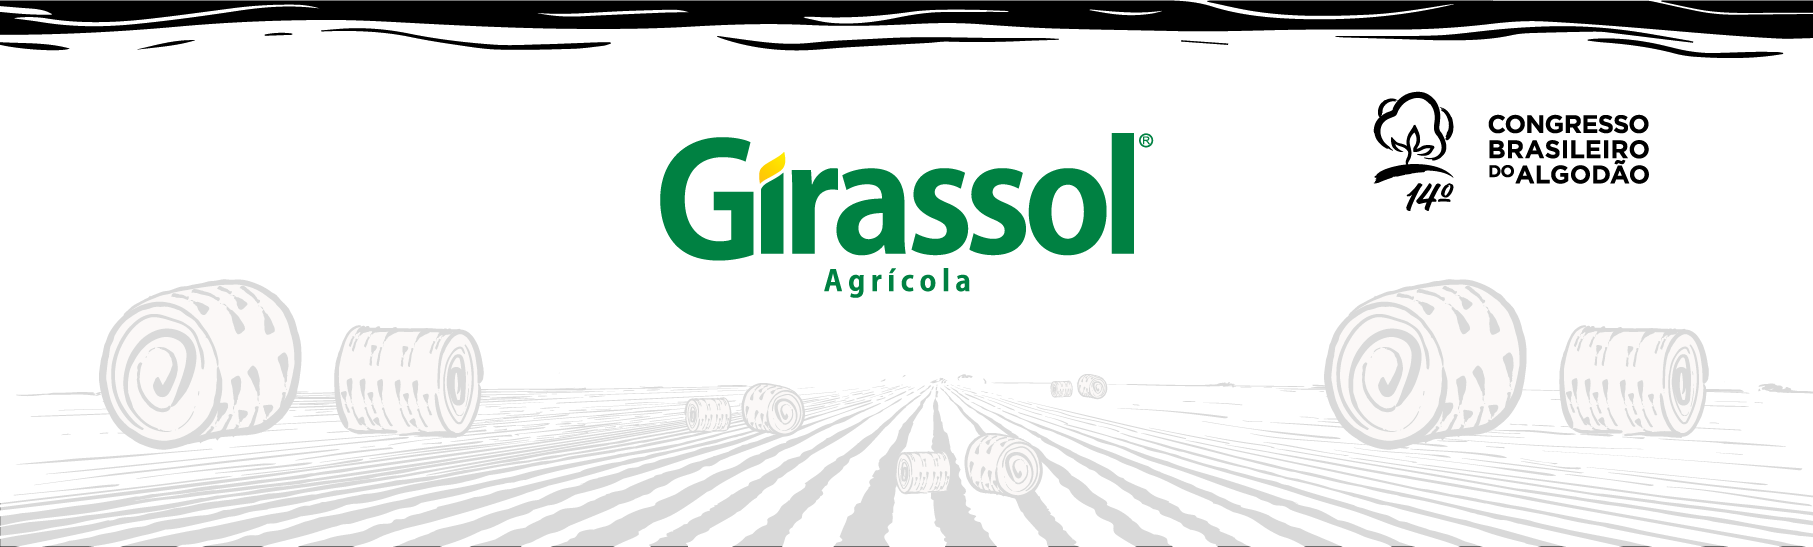 Girassol Agrícola apresentará cultivares com foco em produtividade no 14º CBA